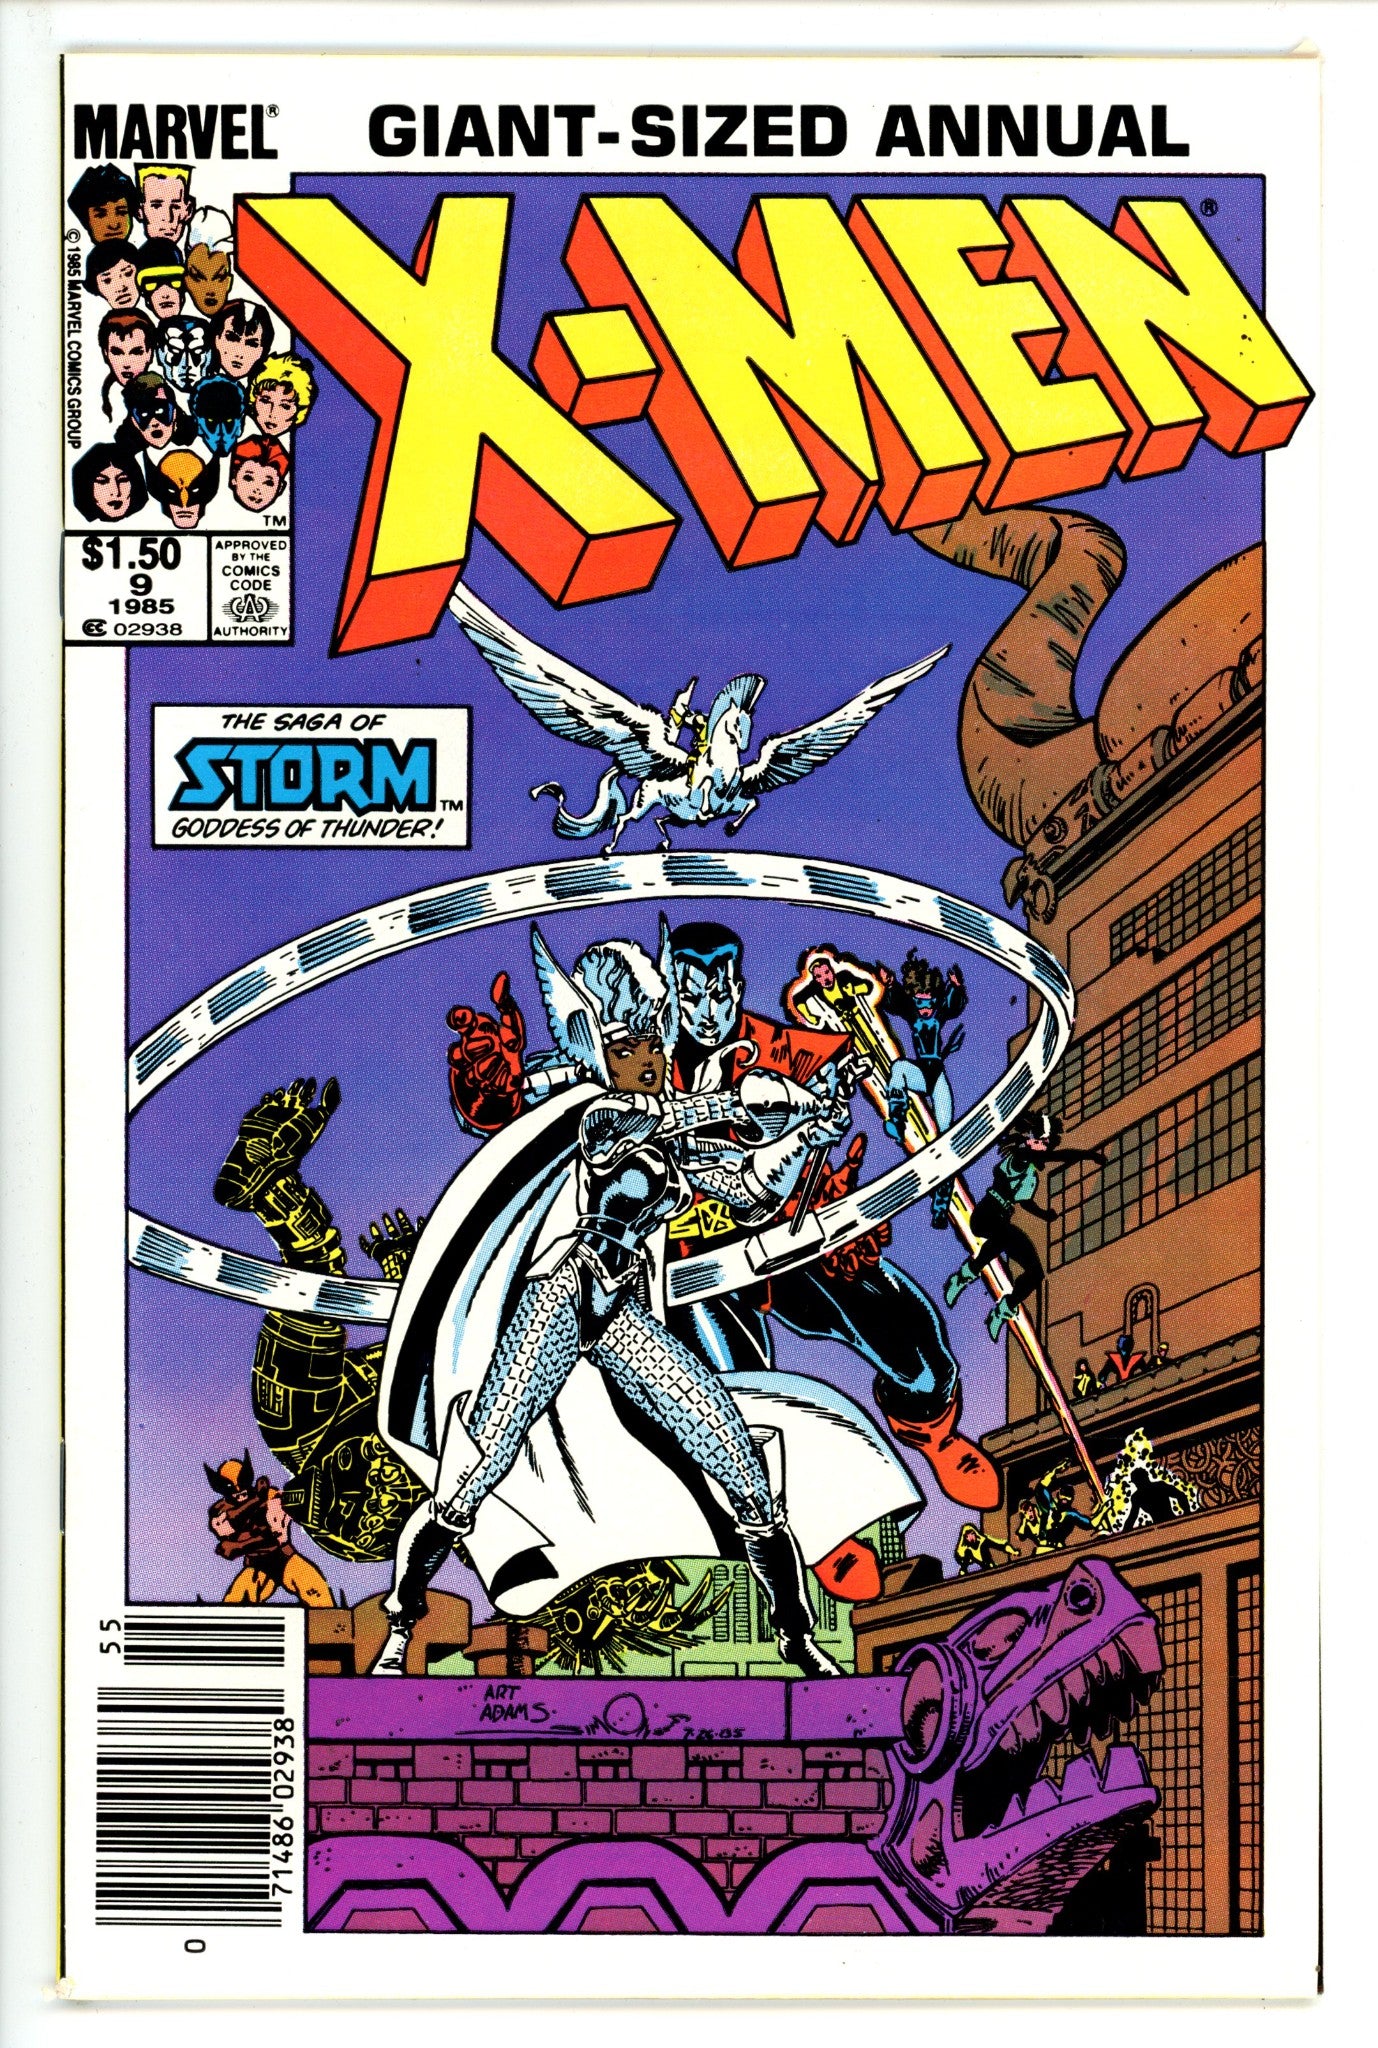 X-Men Annual Vol 1 9 Canadian Price Variant NM- (9.2) (1985)